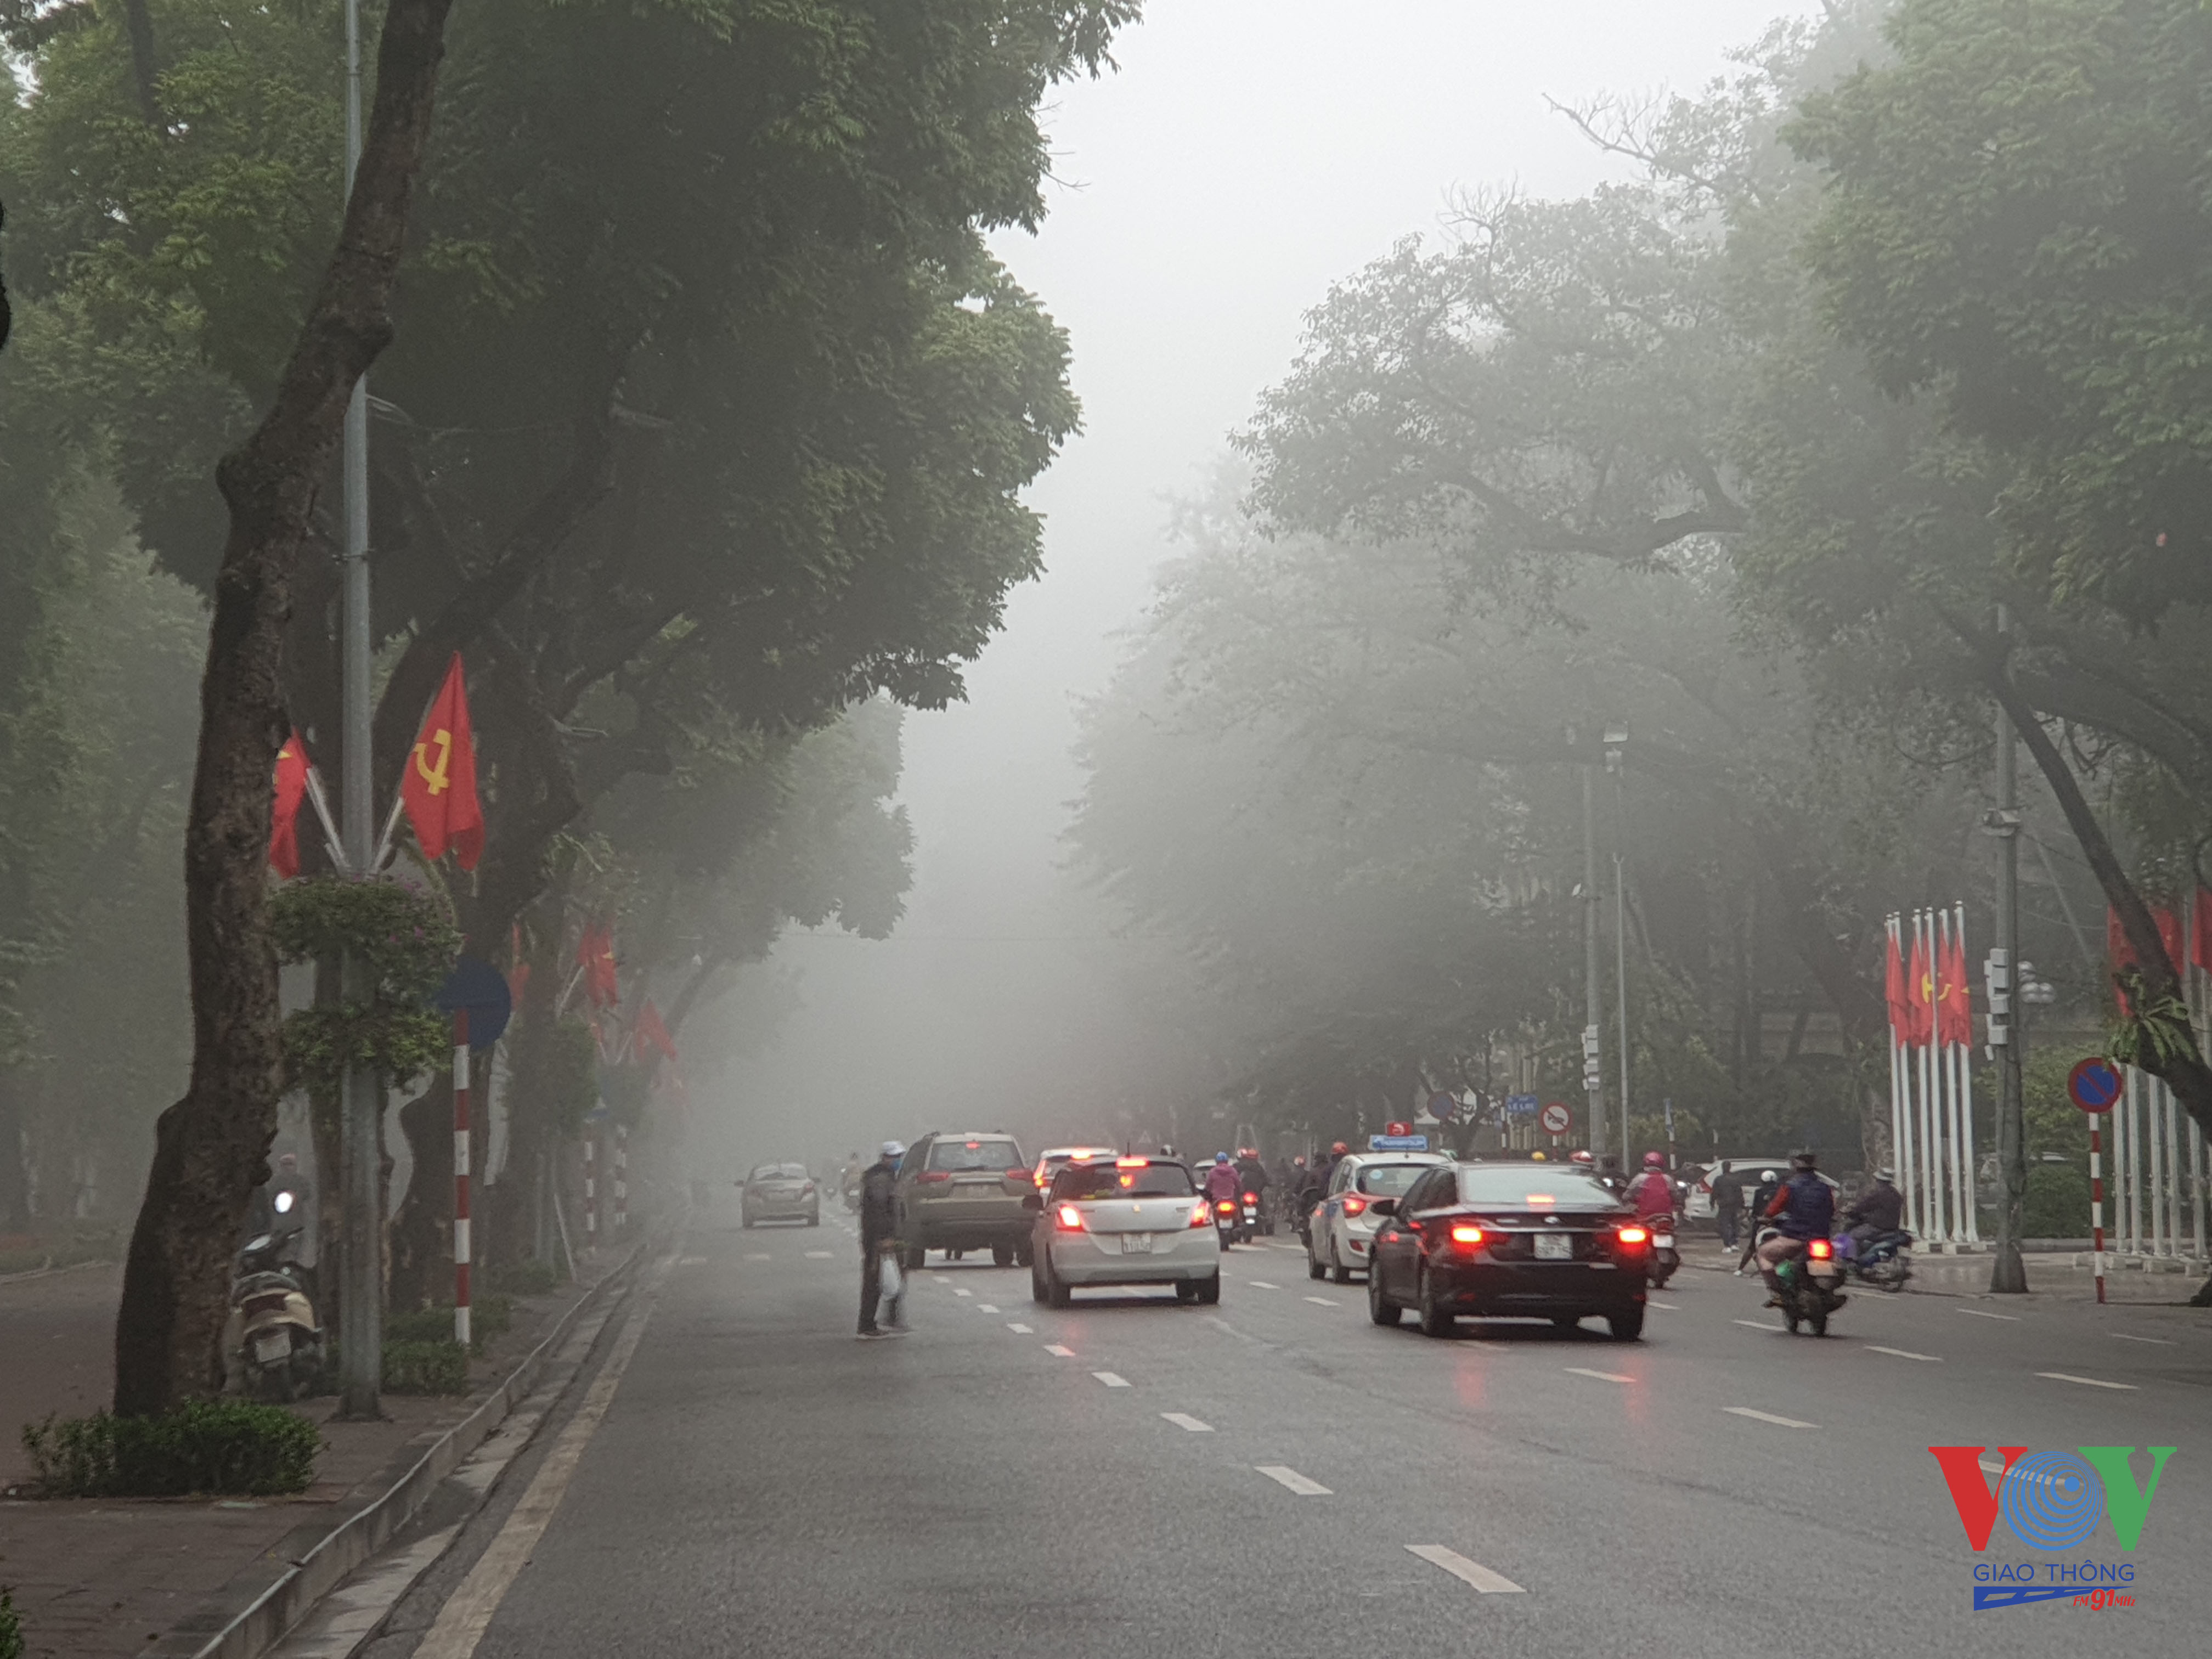 9 Thời gian gần đây hiện tượng sương mù ở Hà Nội thường xuyên xuất hiện. Theo cơ quan khí tượng thủy văn, hiện tượng sương mù ở Hà Nội và các tỉnh miền Bắc do ảnh hưởng của khối không khí lạnh suy yếu, di chuyển lệch đông và đới gió đông nam đưa ẩm từ biển vào.